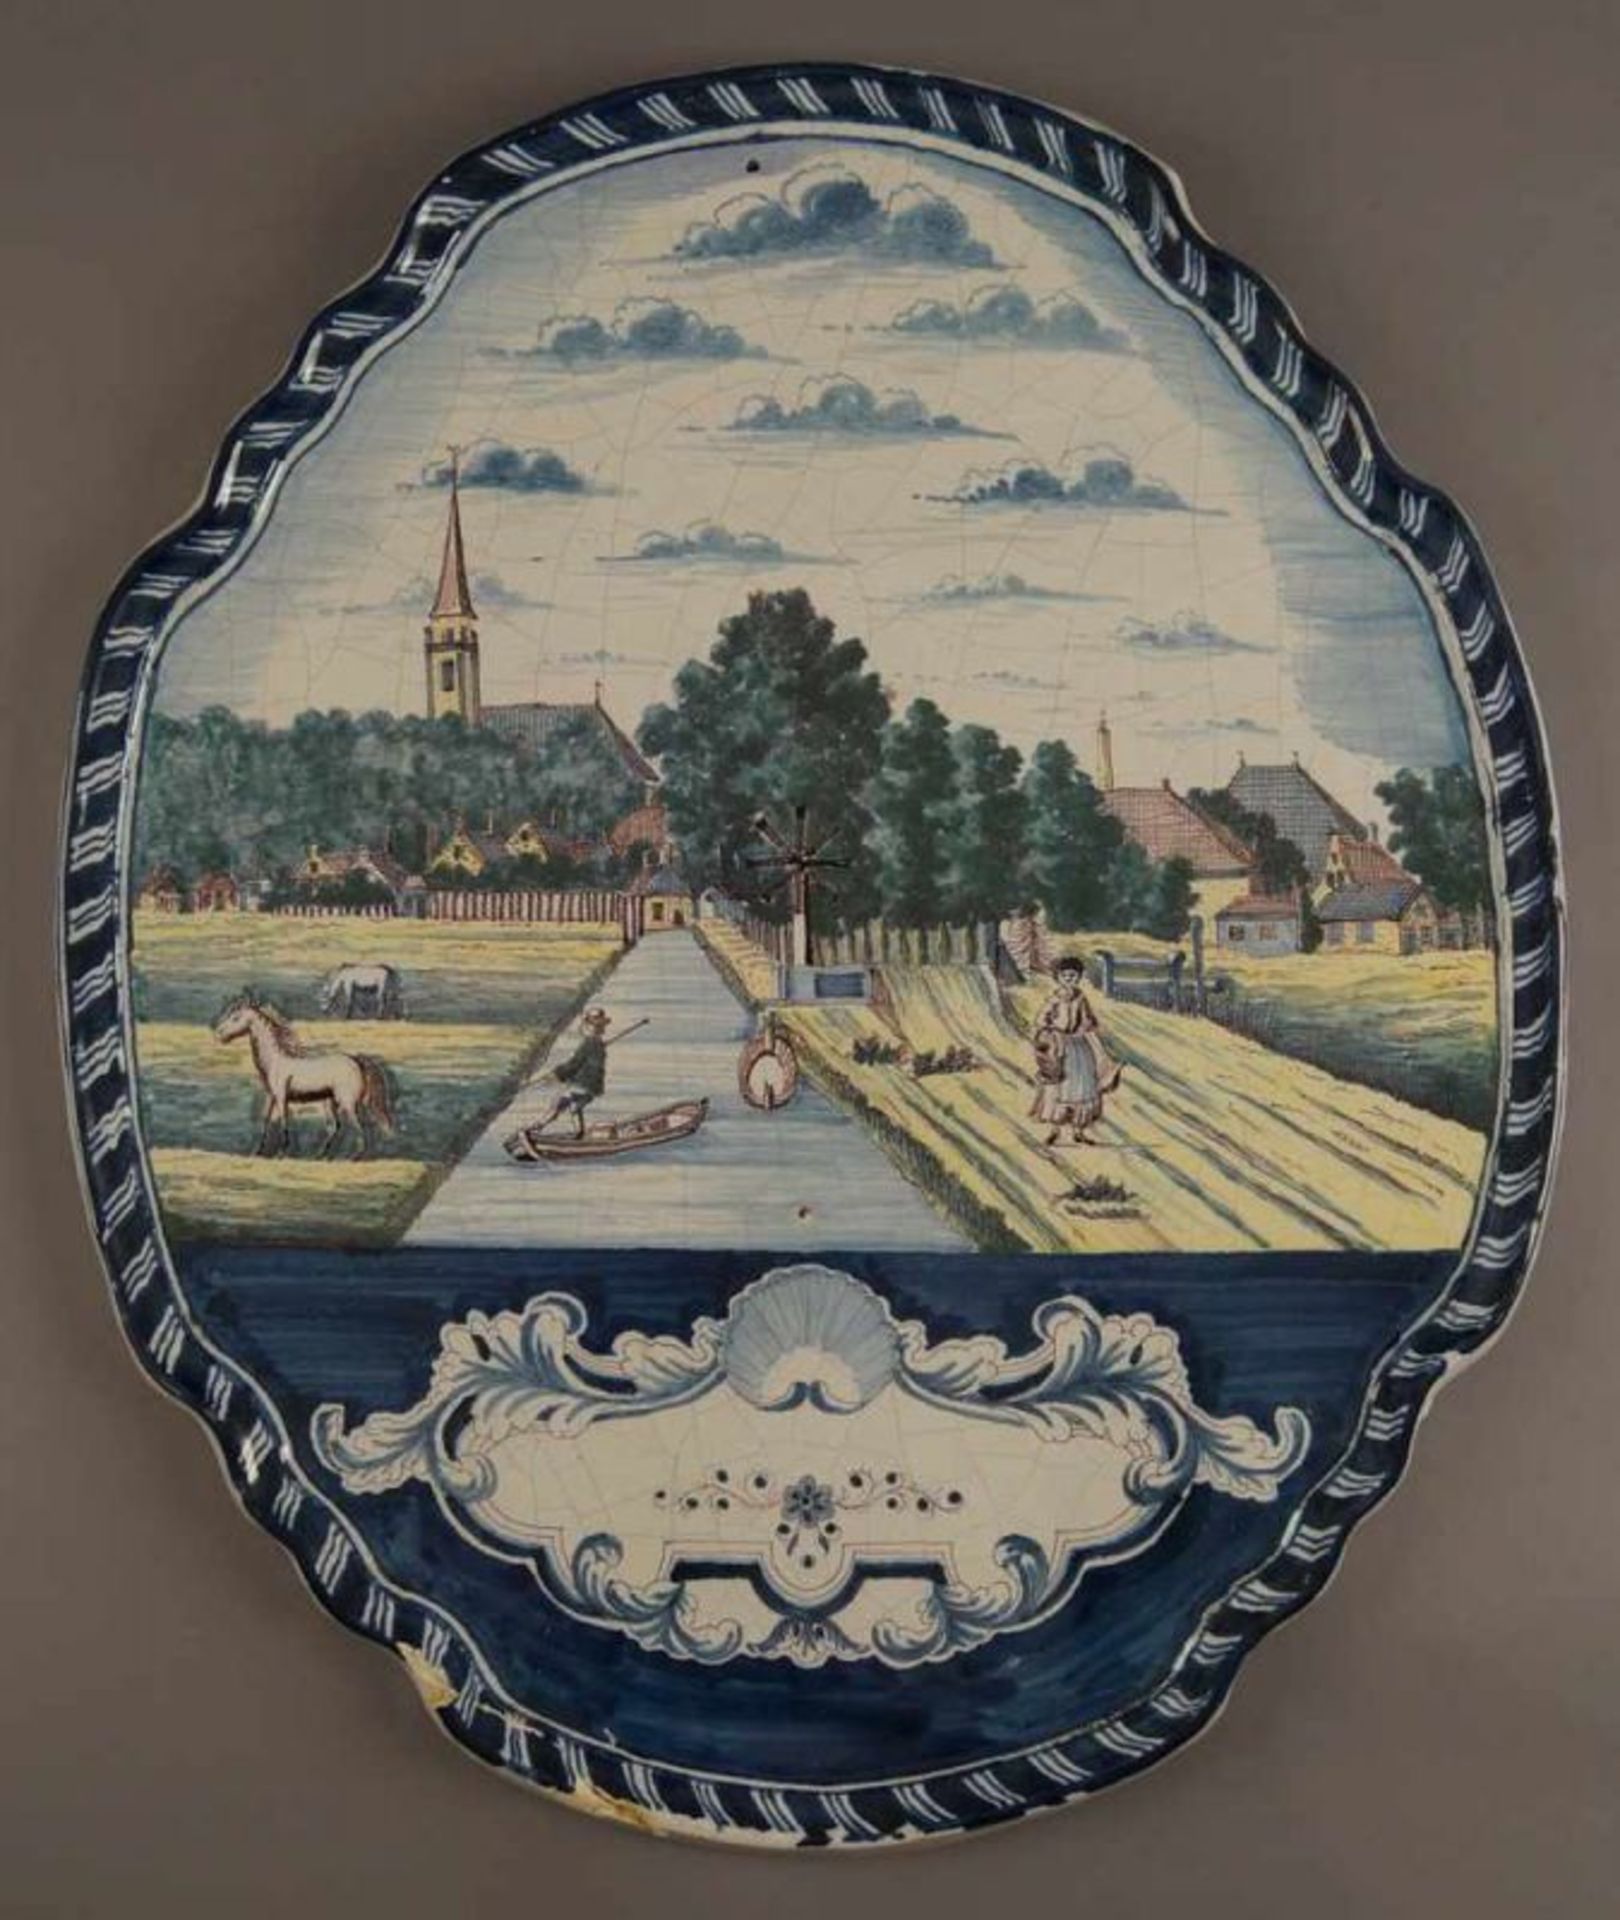 Grosse Fayence-Platte mit Landschaftsansicht und Personen, um 1800, min. rest.-bed., 57x48 cm 20. - Bild 2 aus 7